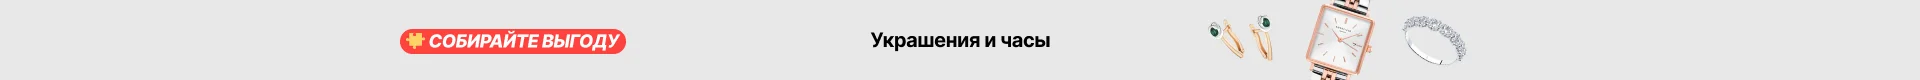 Чехол для телефона с белорусским флагом задняя крышка iPhone 13 11 12 Pro Max mini XS XR X 8 Plus 7 SE